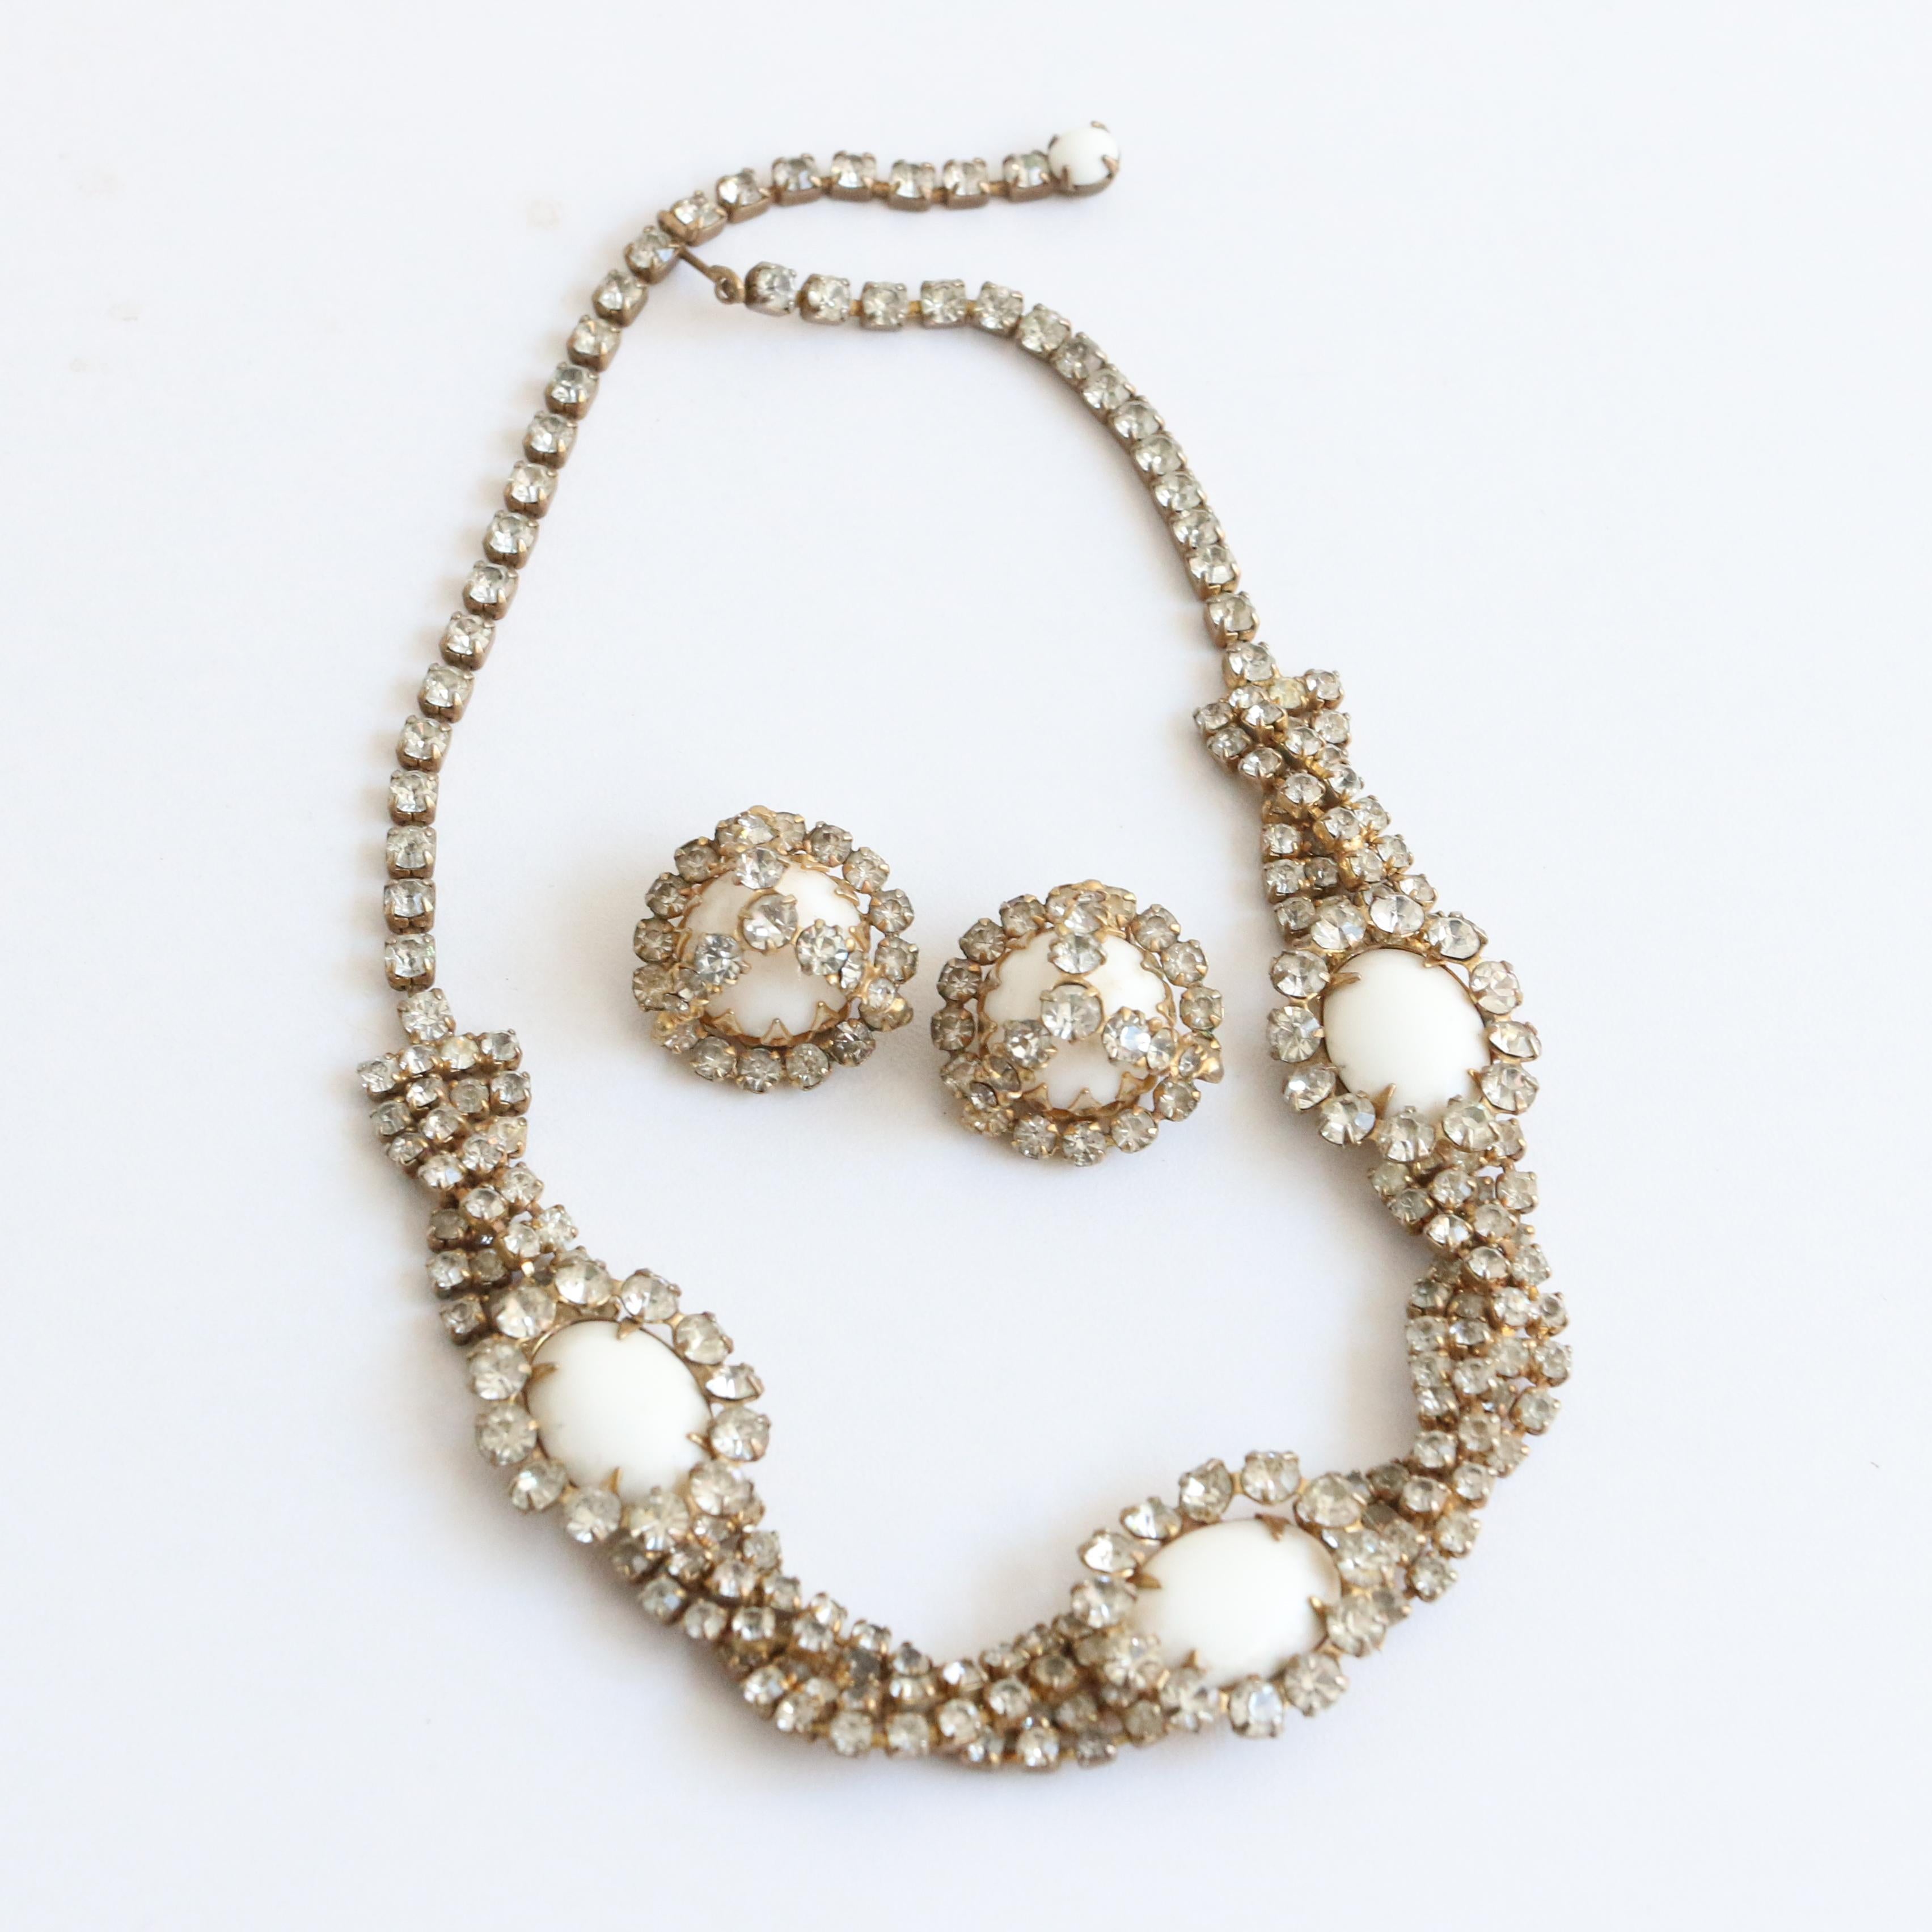 Cette époustouflante parure de bijoux Hattie Carnegie des années 1950, composée d'un collier et de boucles d'oreilles à clip, est l'ensemble parfait pour ajouter une touche de glamour à votre tenue. 

Ce collier complexe présente un motif de strass